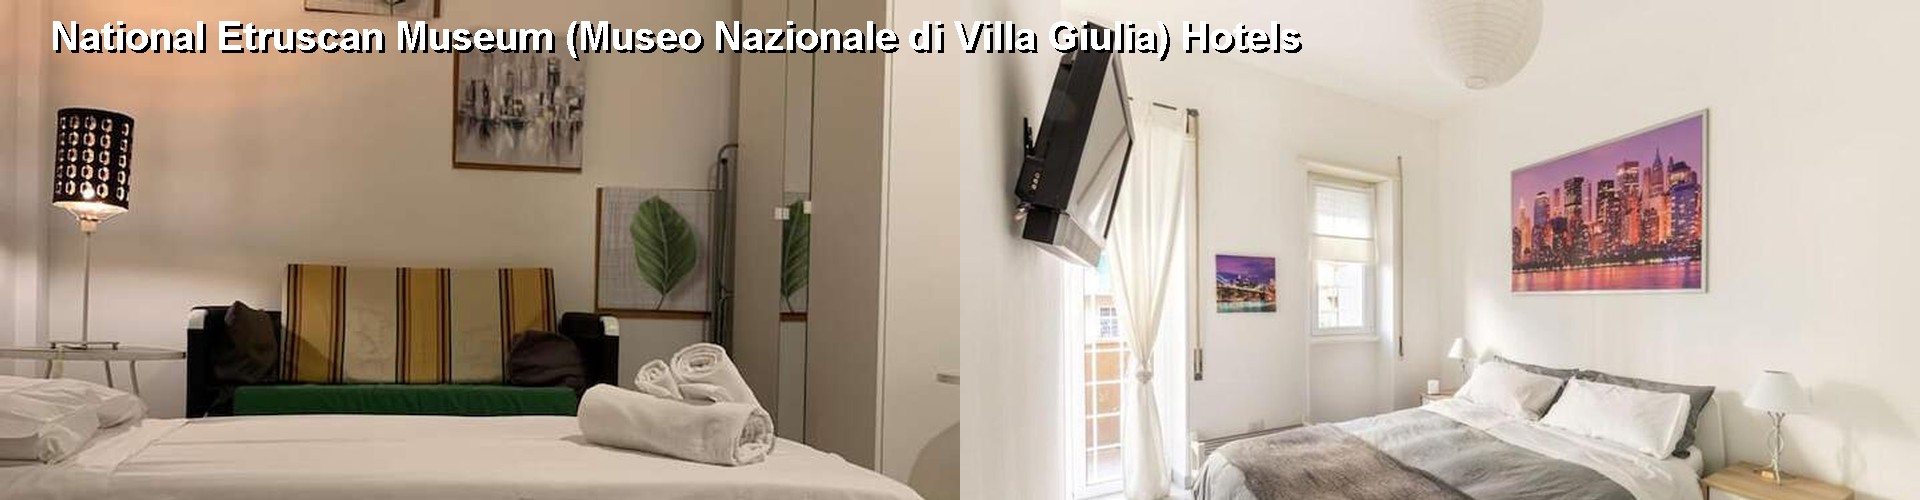 5 Best Hotels near National Etruscan Museum (Museo Nazionale di Villa Giulia)